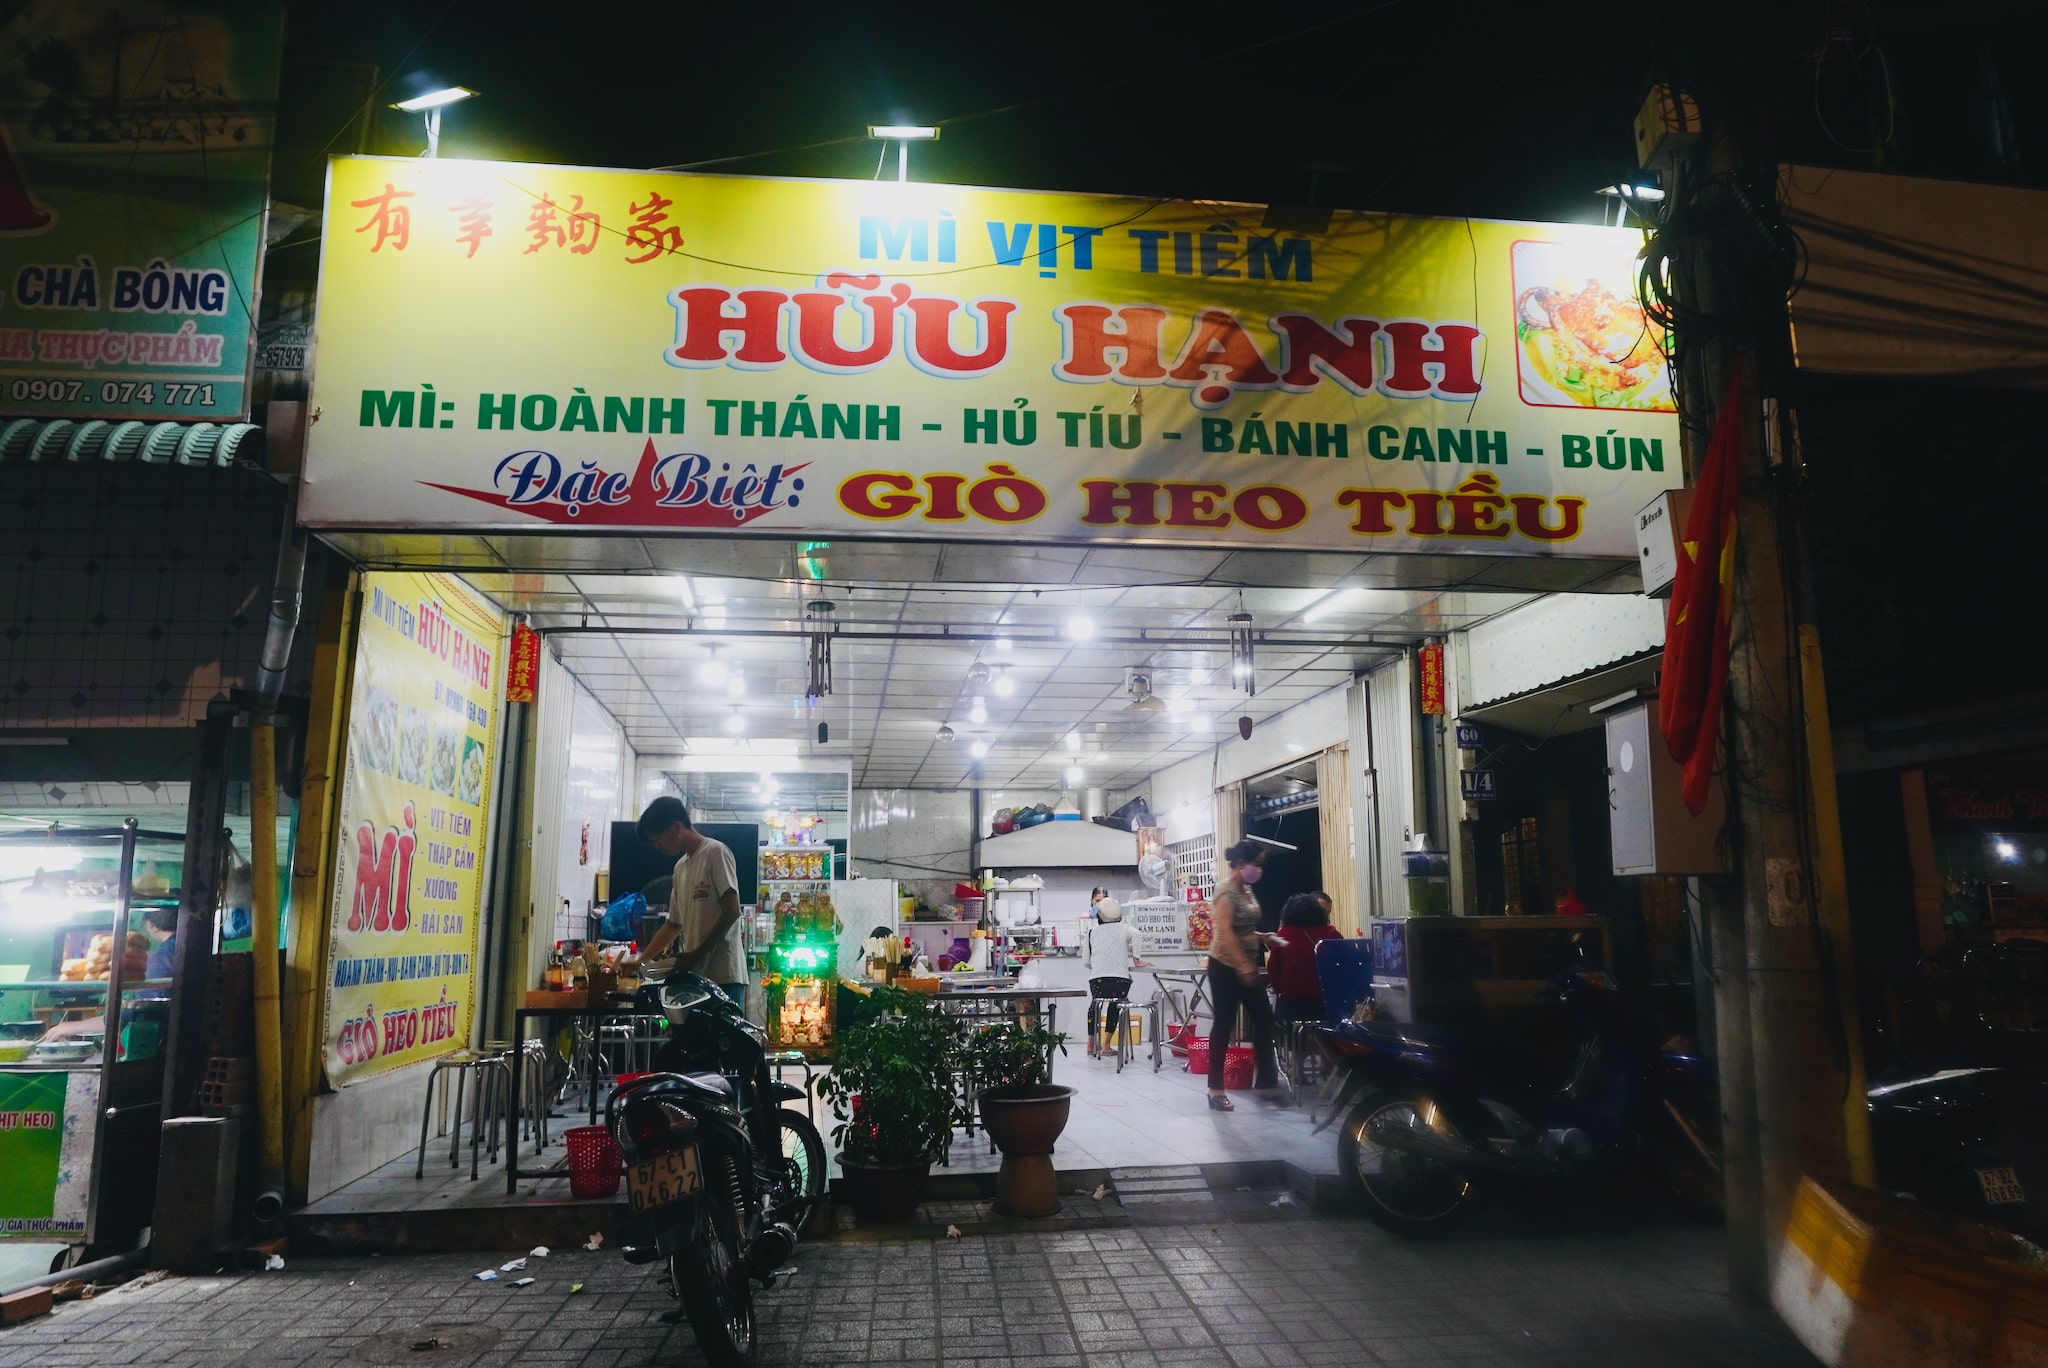 Huu Hanh eatery in Long Xuyen City. Photo: Xuan Tung / Tuoi Tre